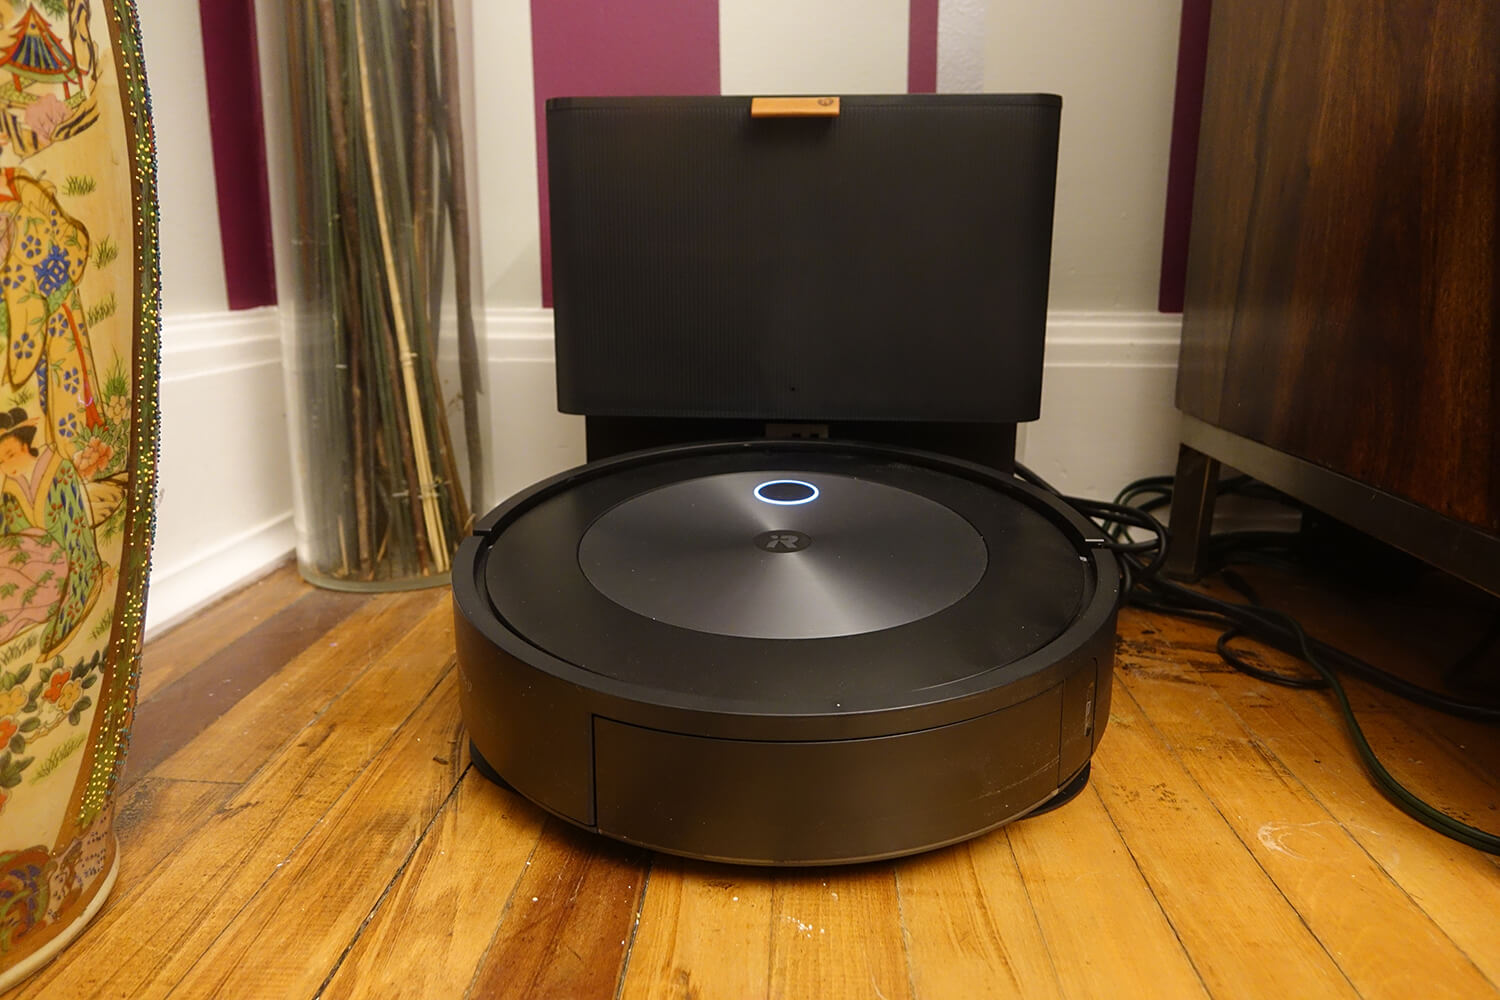 iRobot Roomba j7+ on dock